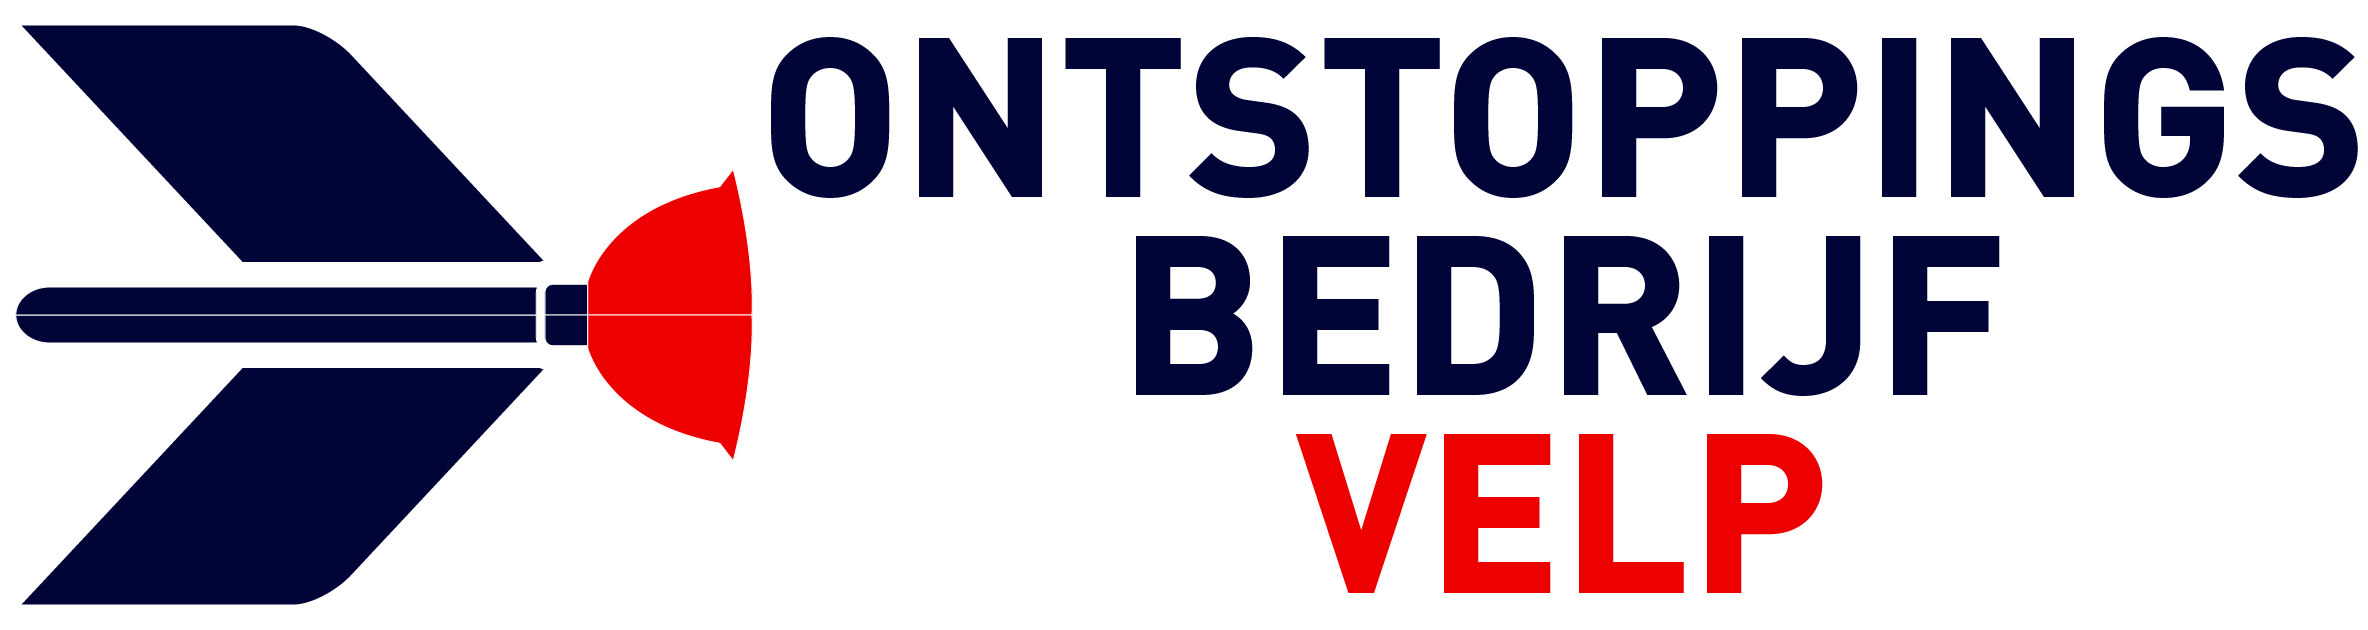 Ontstoppingsbedrijf Velp logo